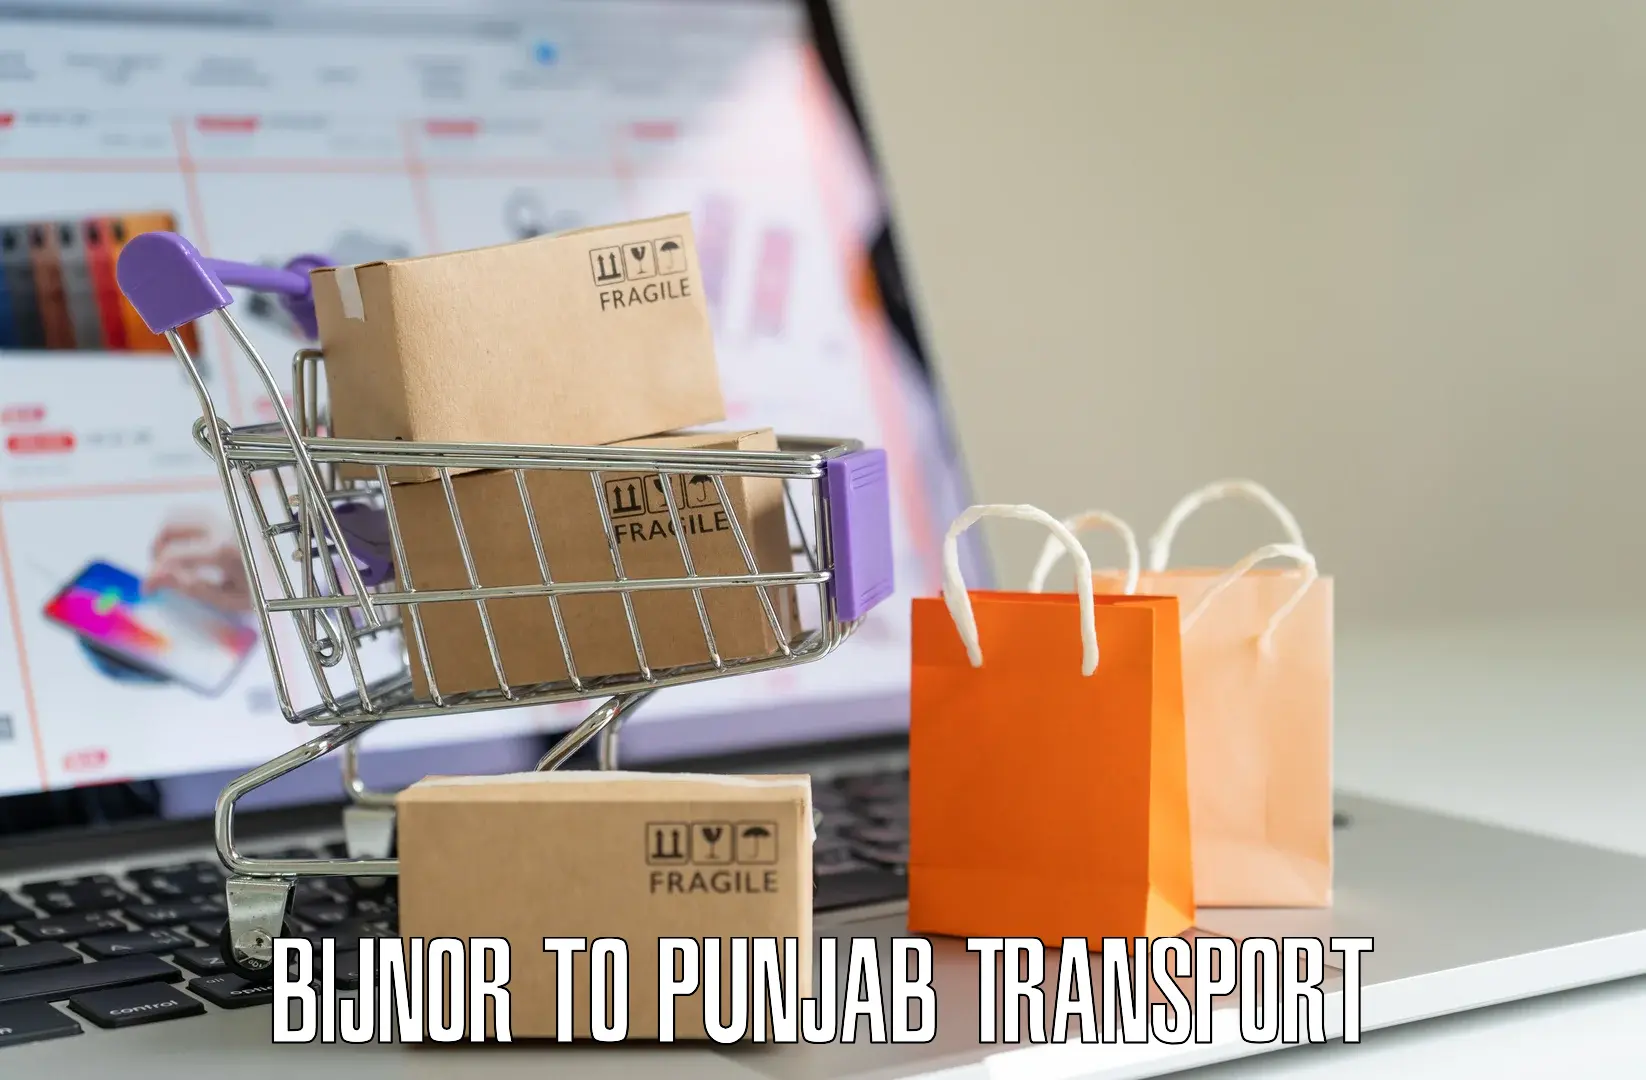 Online transport booking Bijnor to Nakodar